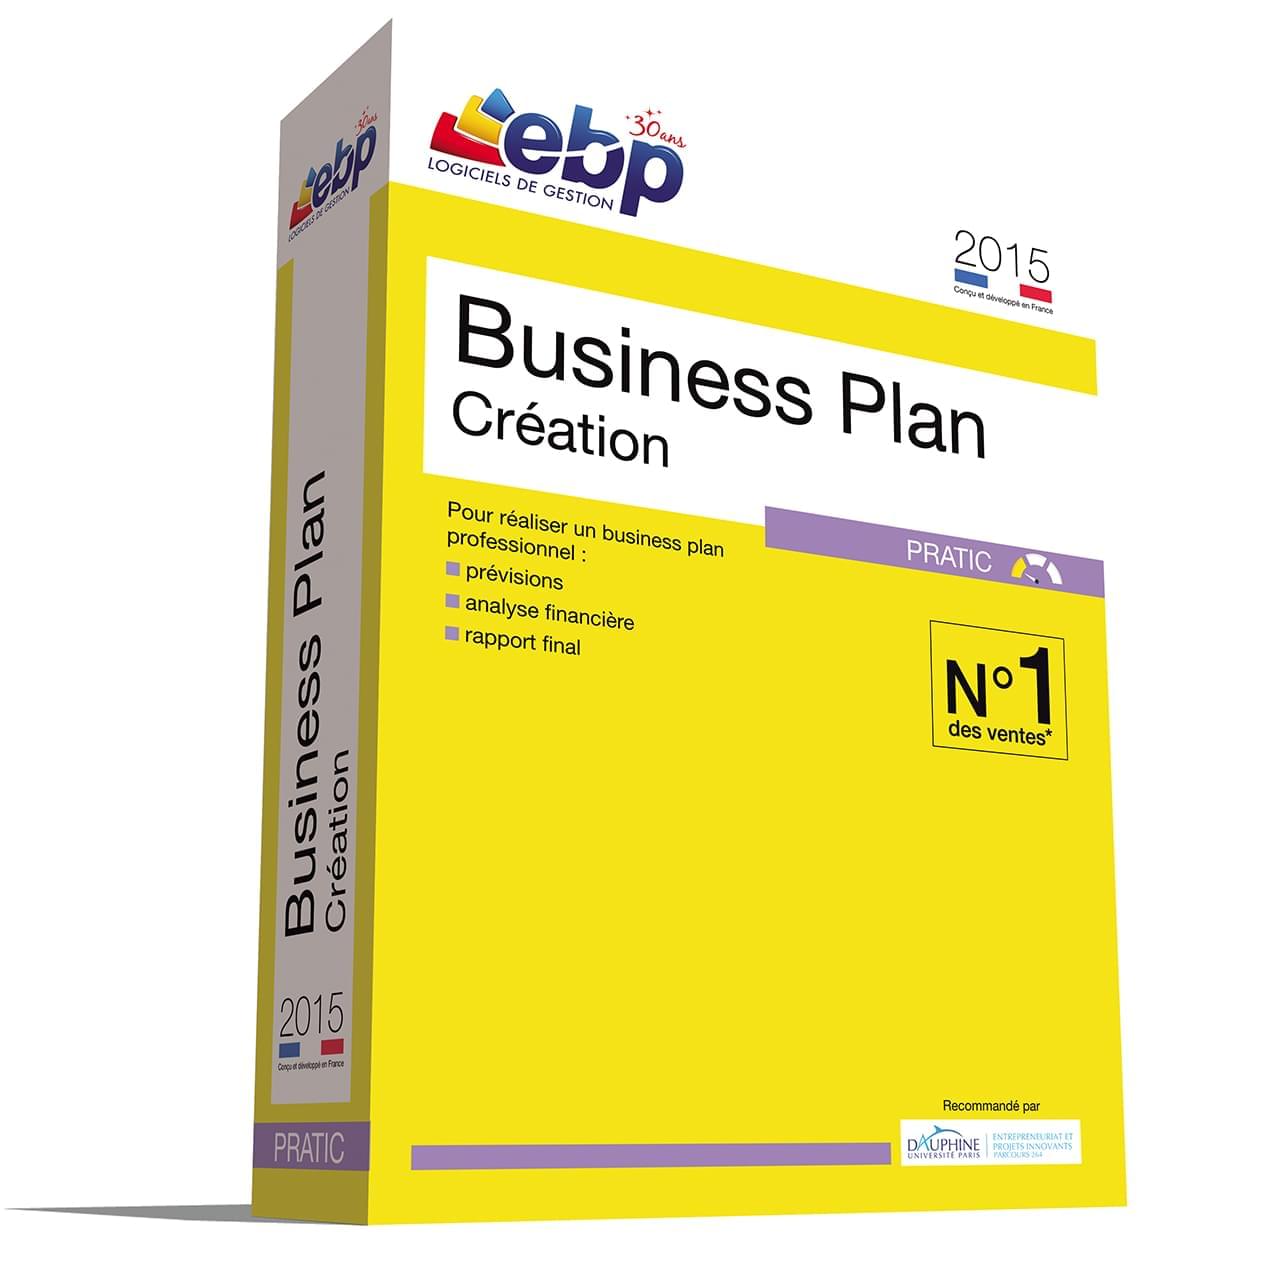 Logiciel application EBP Business Plan Pratic 2015